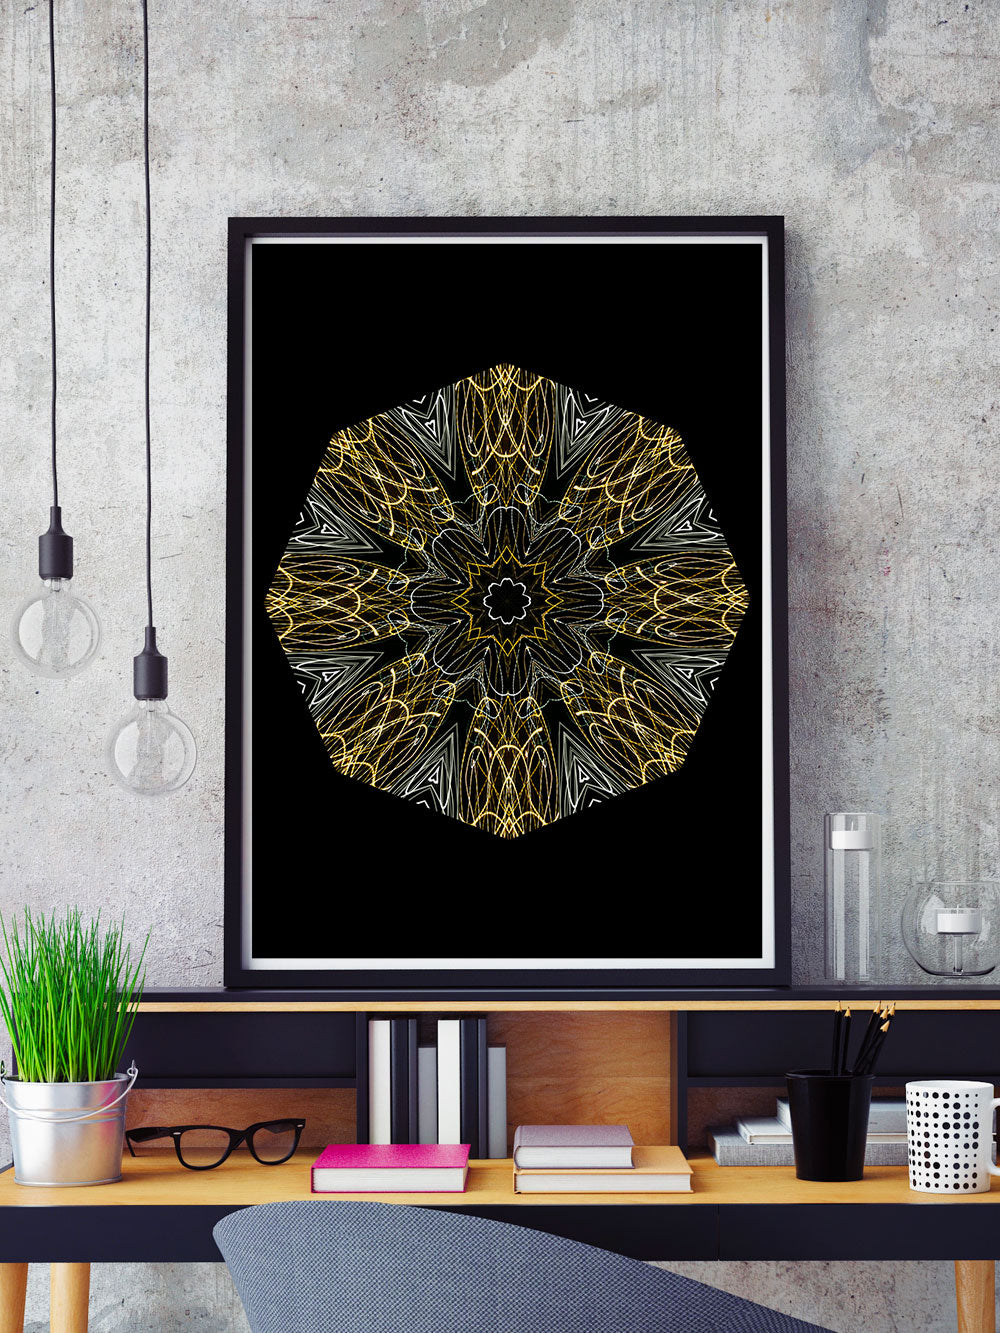 Edison Mandala Print in a frame on a shelf